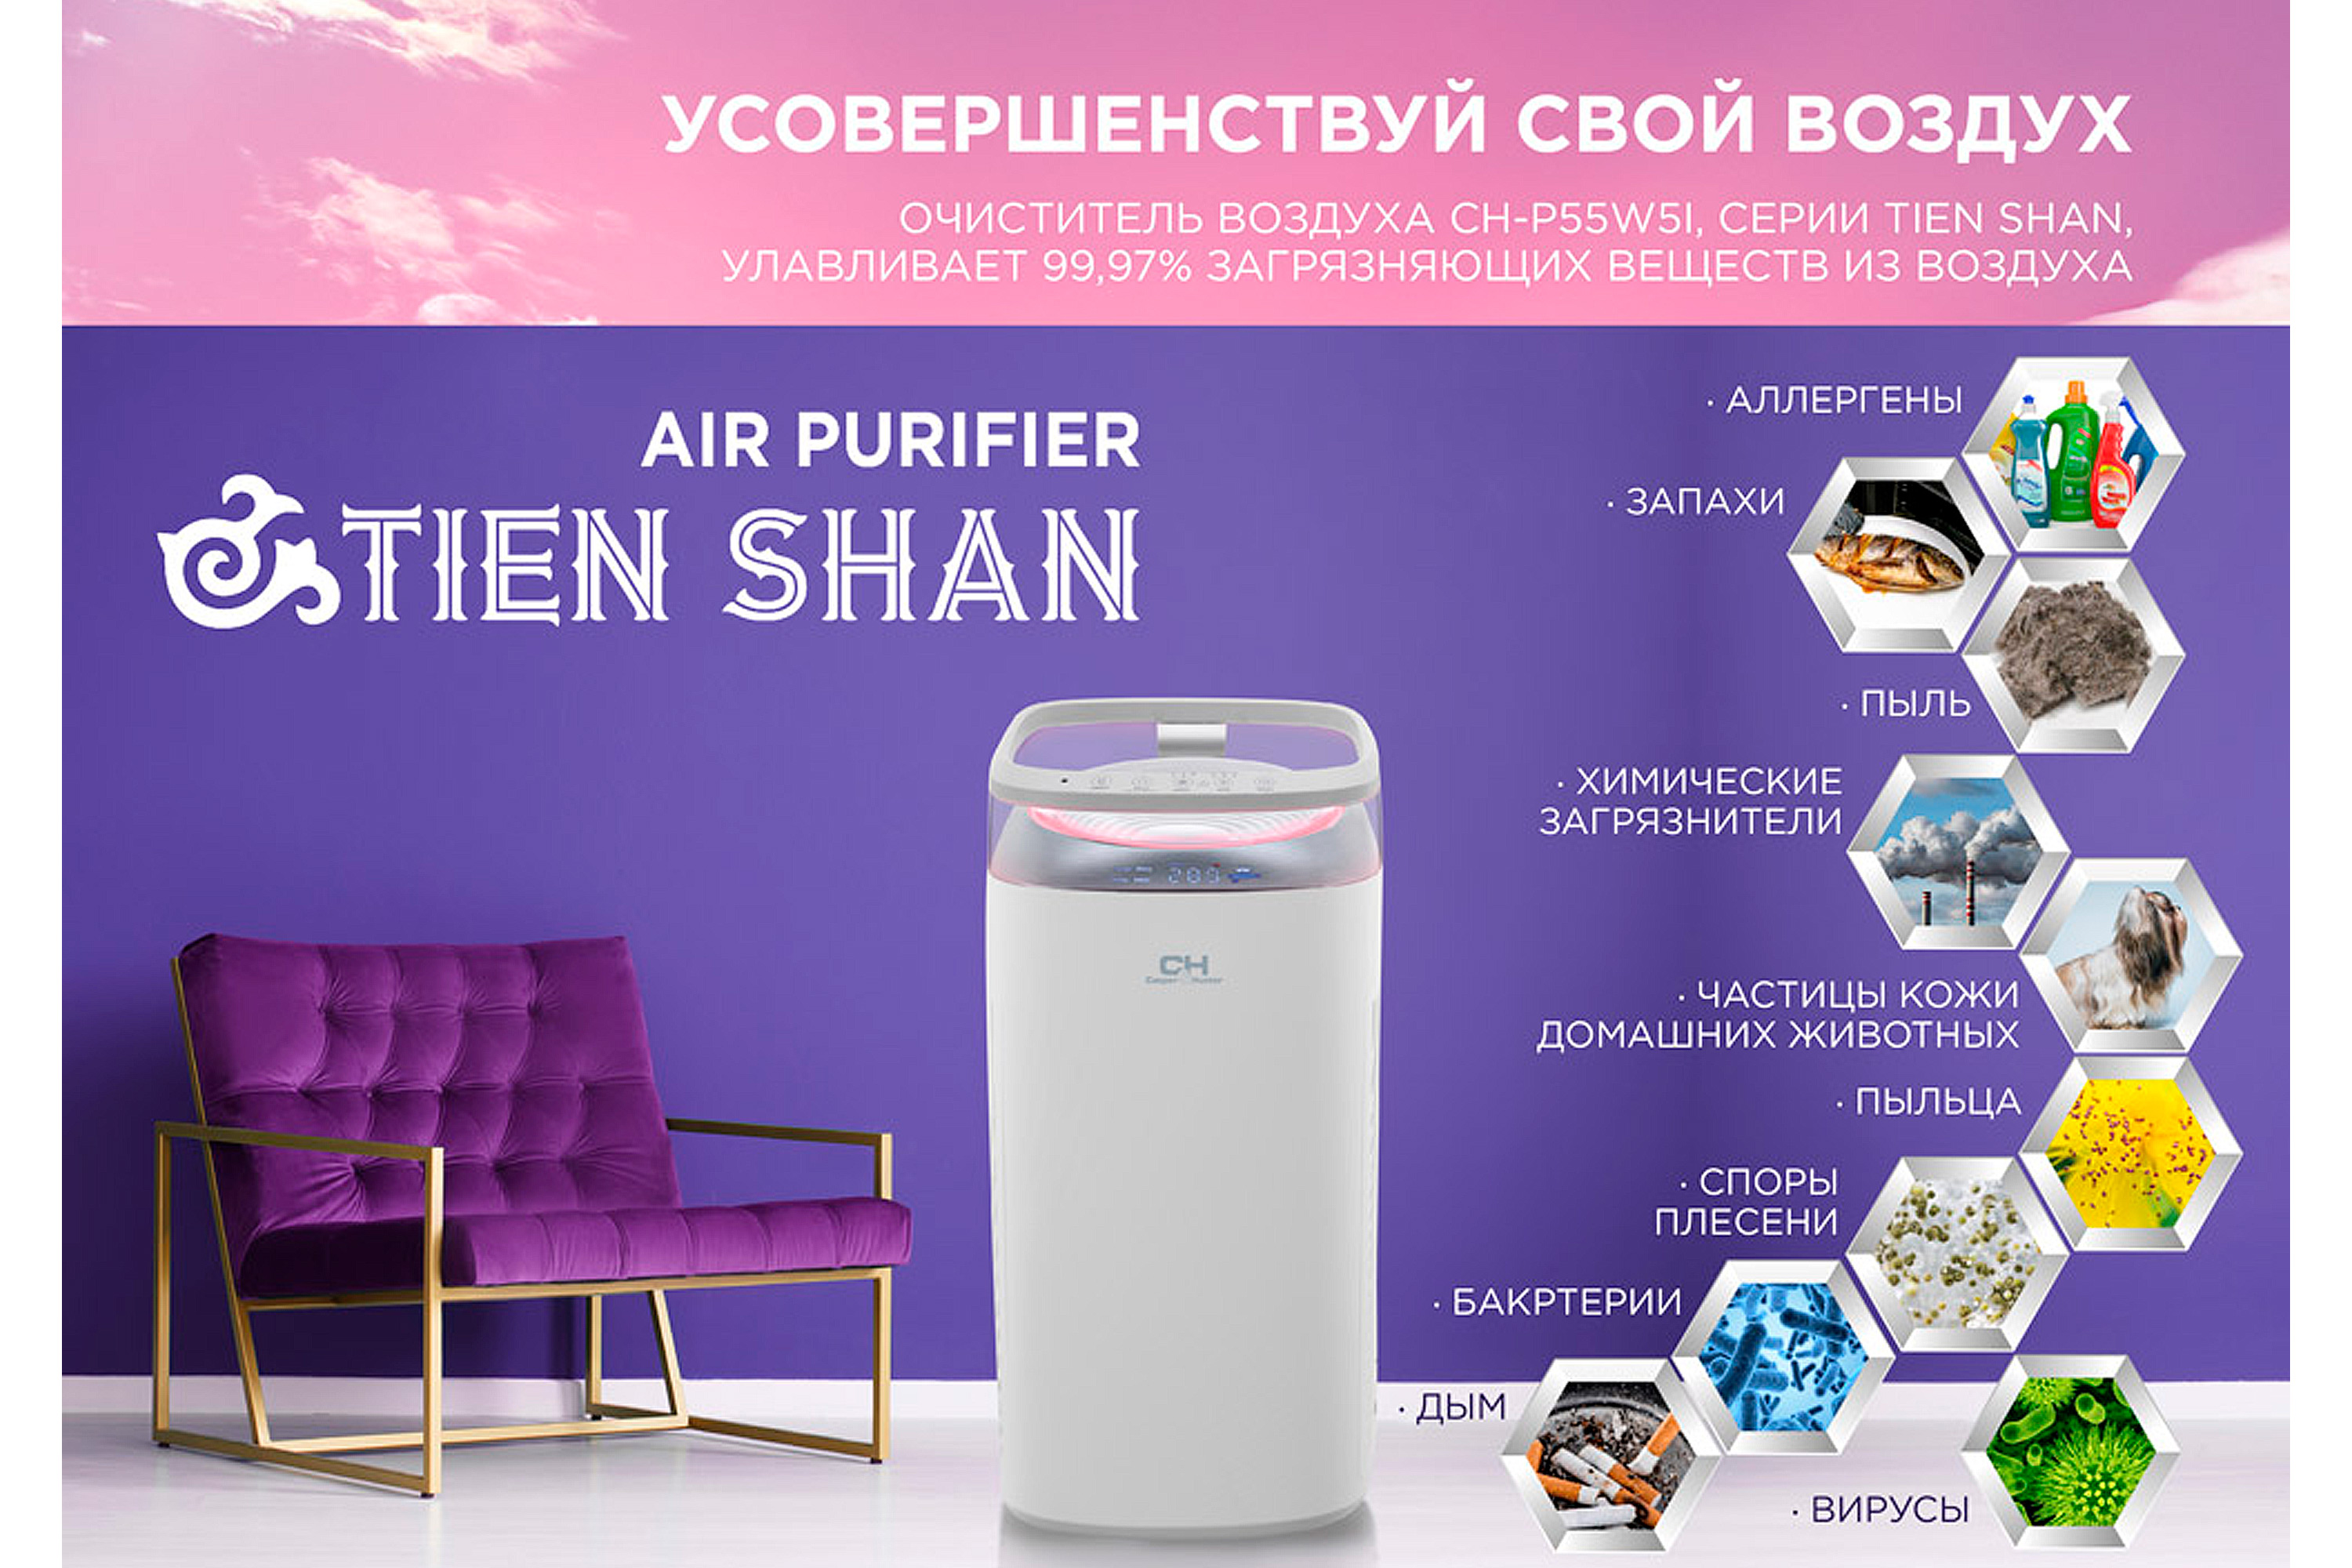 Очиститель воздуха Cooper&Hunter CH-P55W5I Tien-shan отзывы - изображения 5